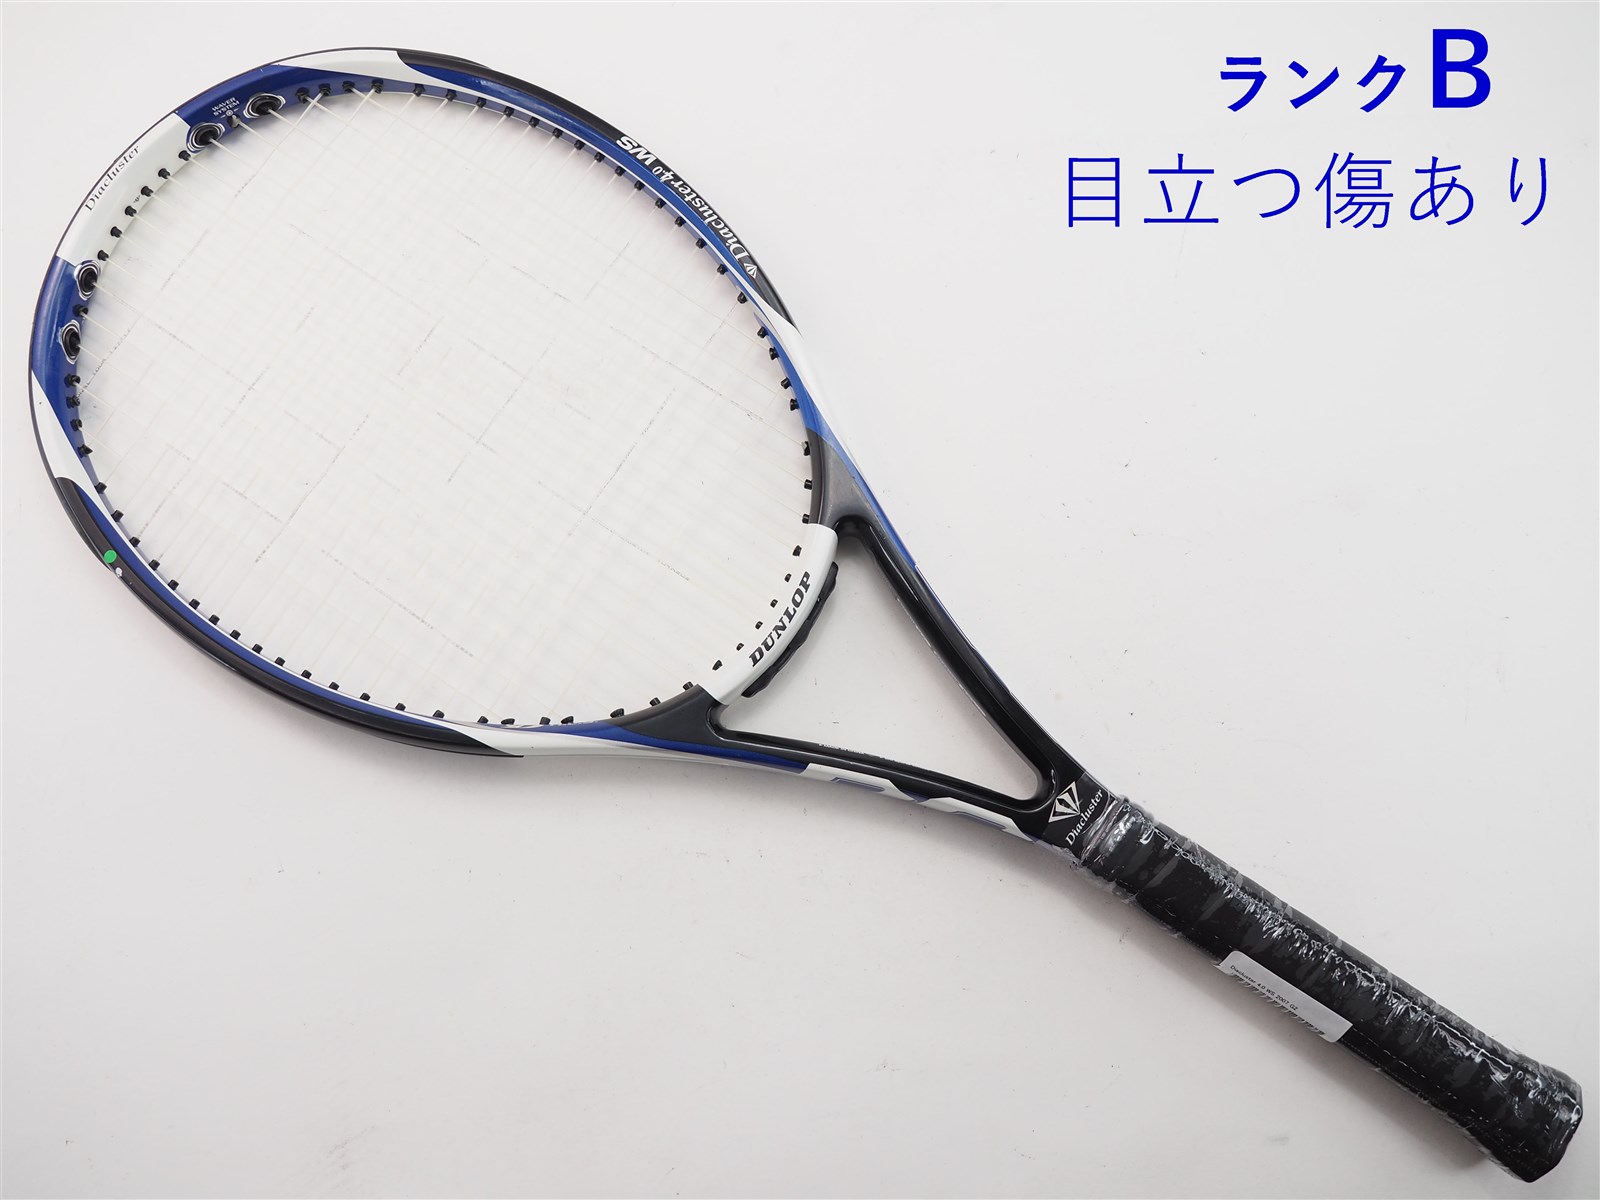 【中古】ダンロップ ダイアクラスター 4.0 WS 2007年モデルDUNLOP Diacluster 4.0 WS 2007(G2)【中古  テニスラケット】